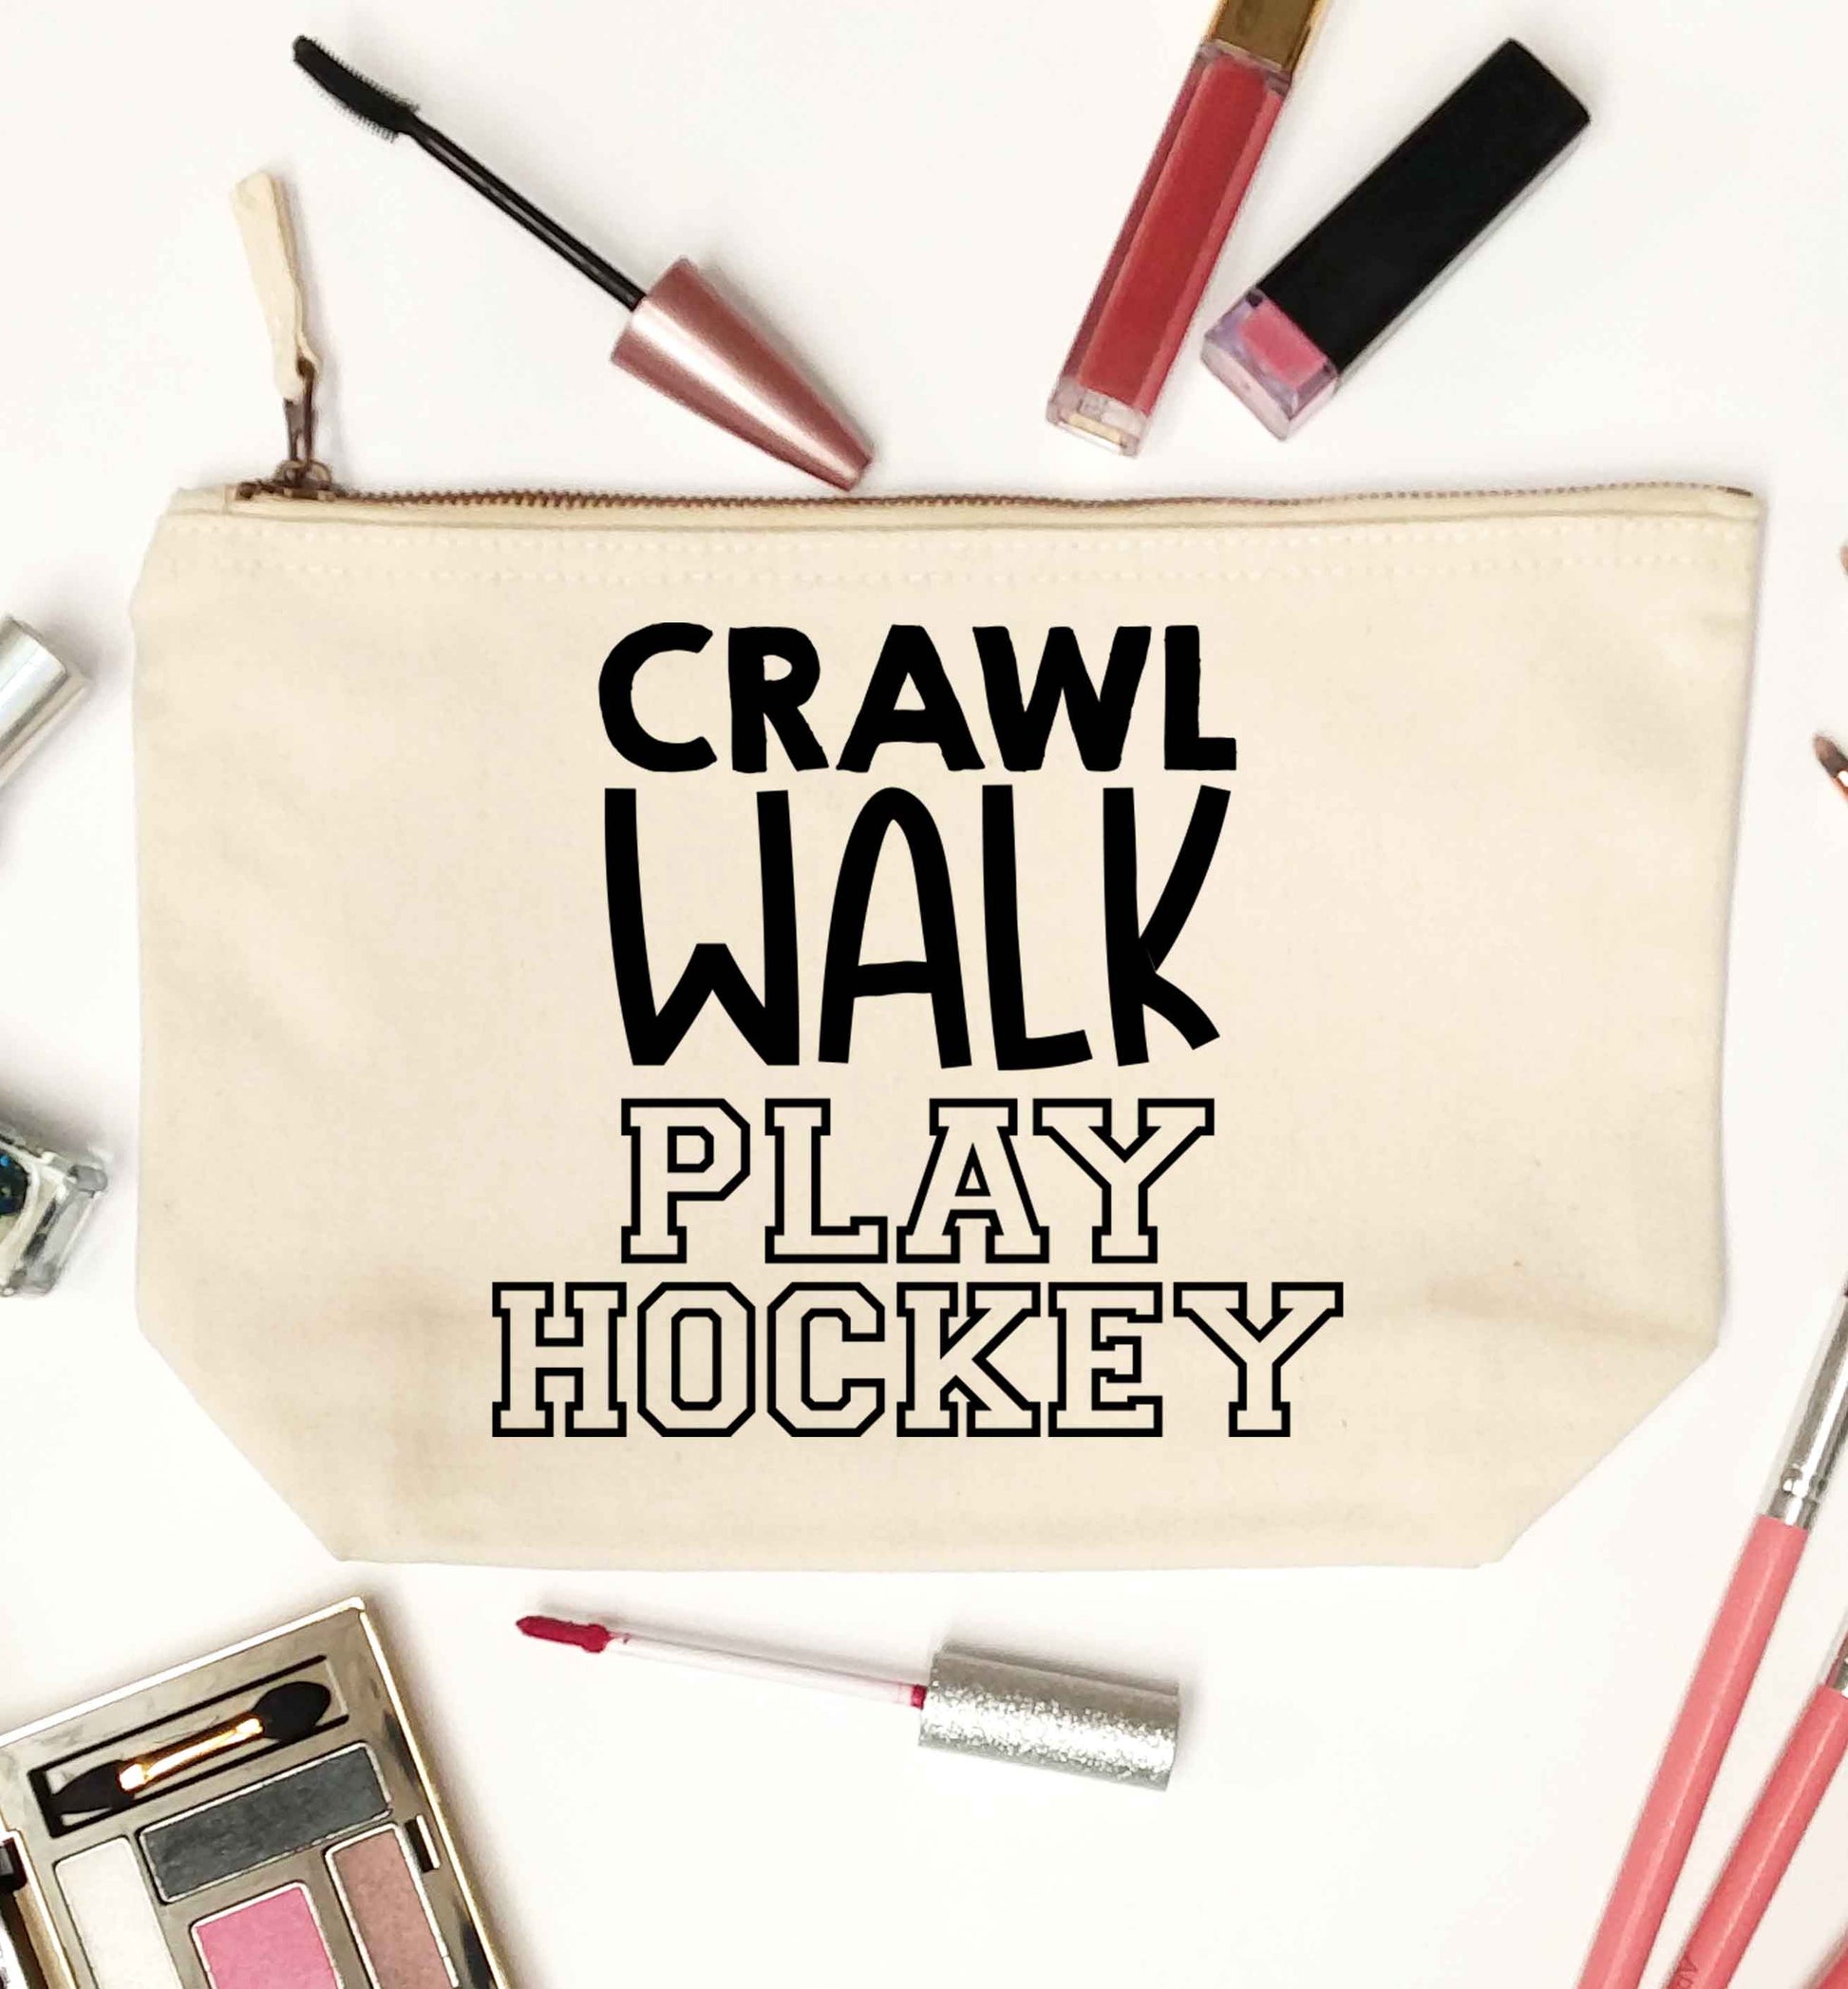 Crawl walk play hockey natural makeup bag